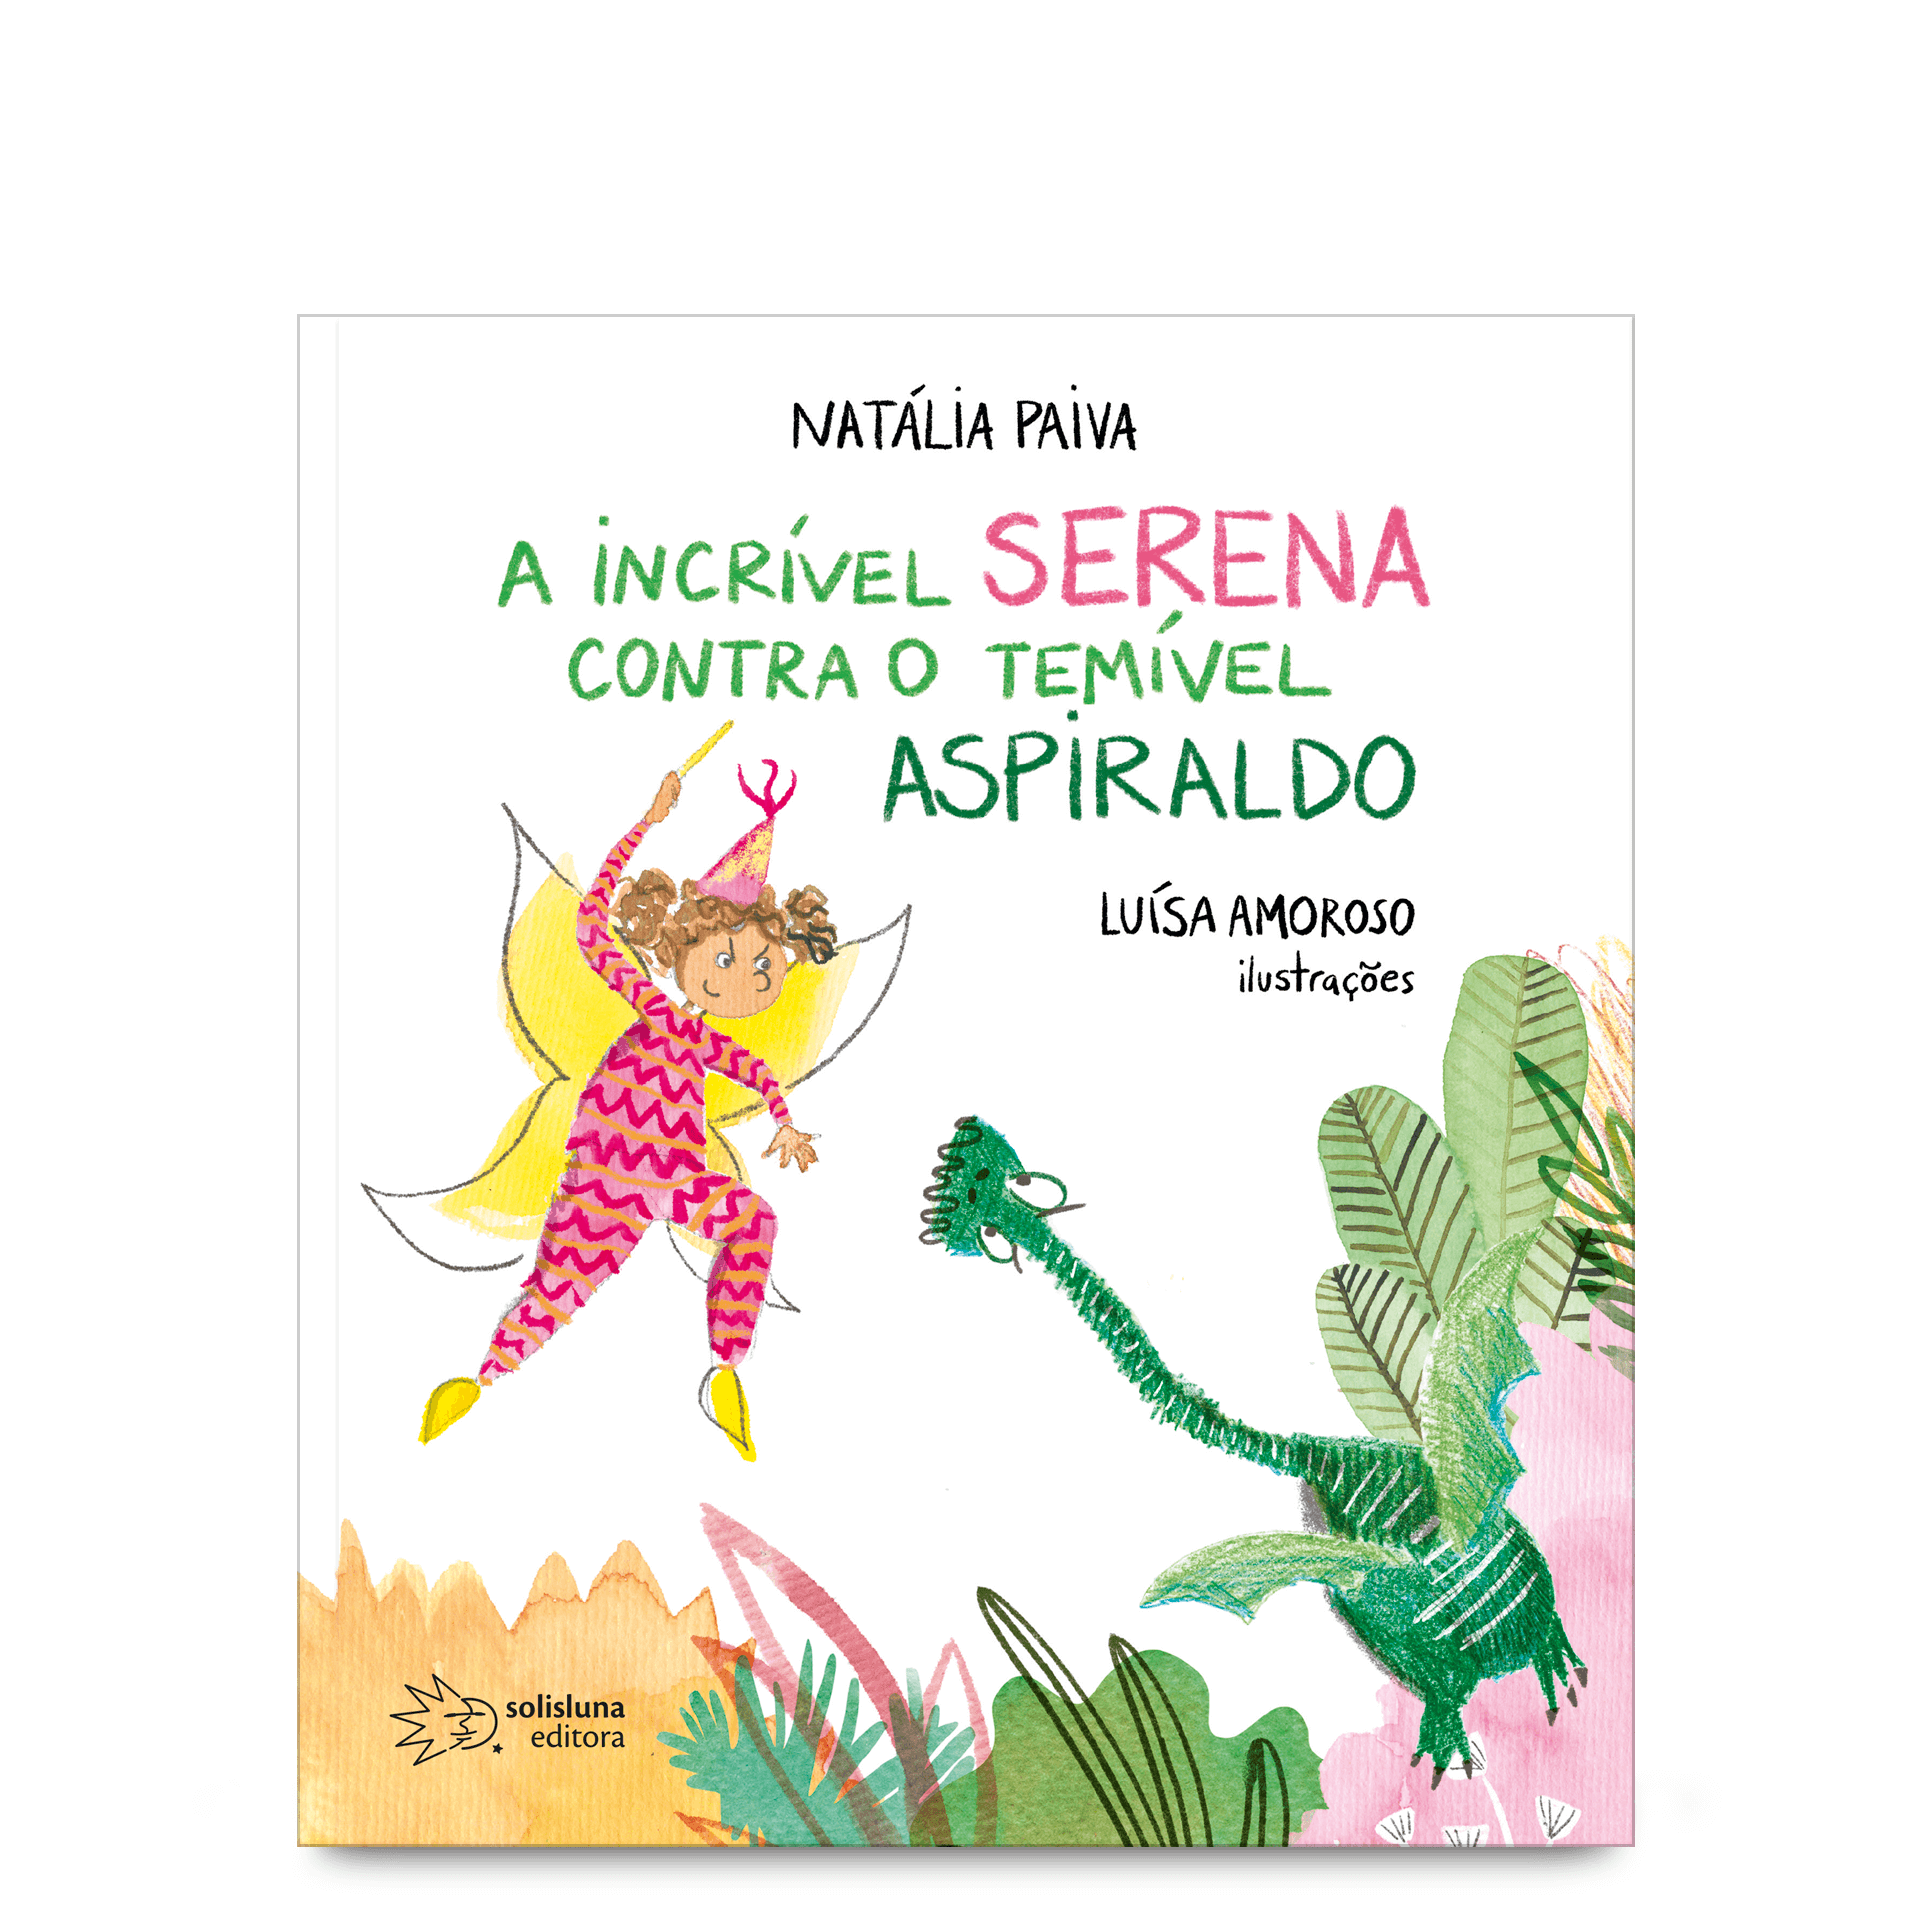 A Incrível serena contra o temível aspiraldo de Natália Paiva com ilustrações de Luísa Amoroso